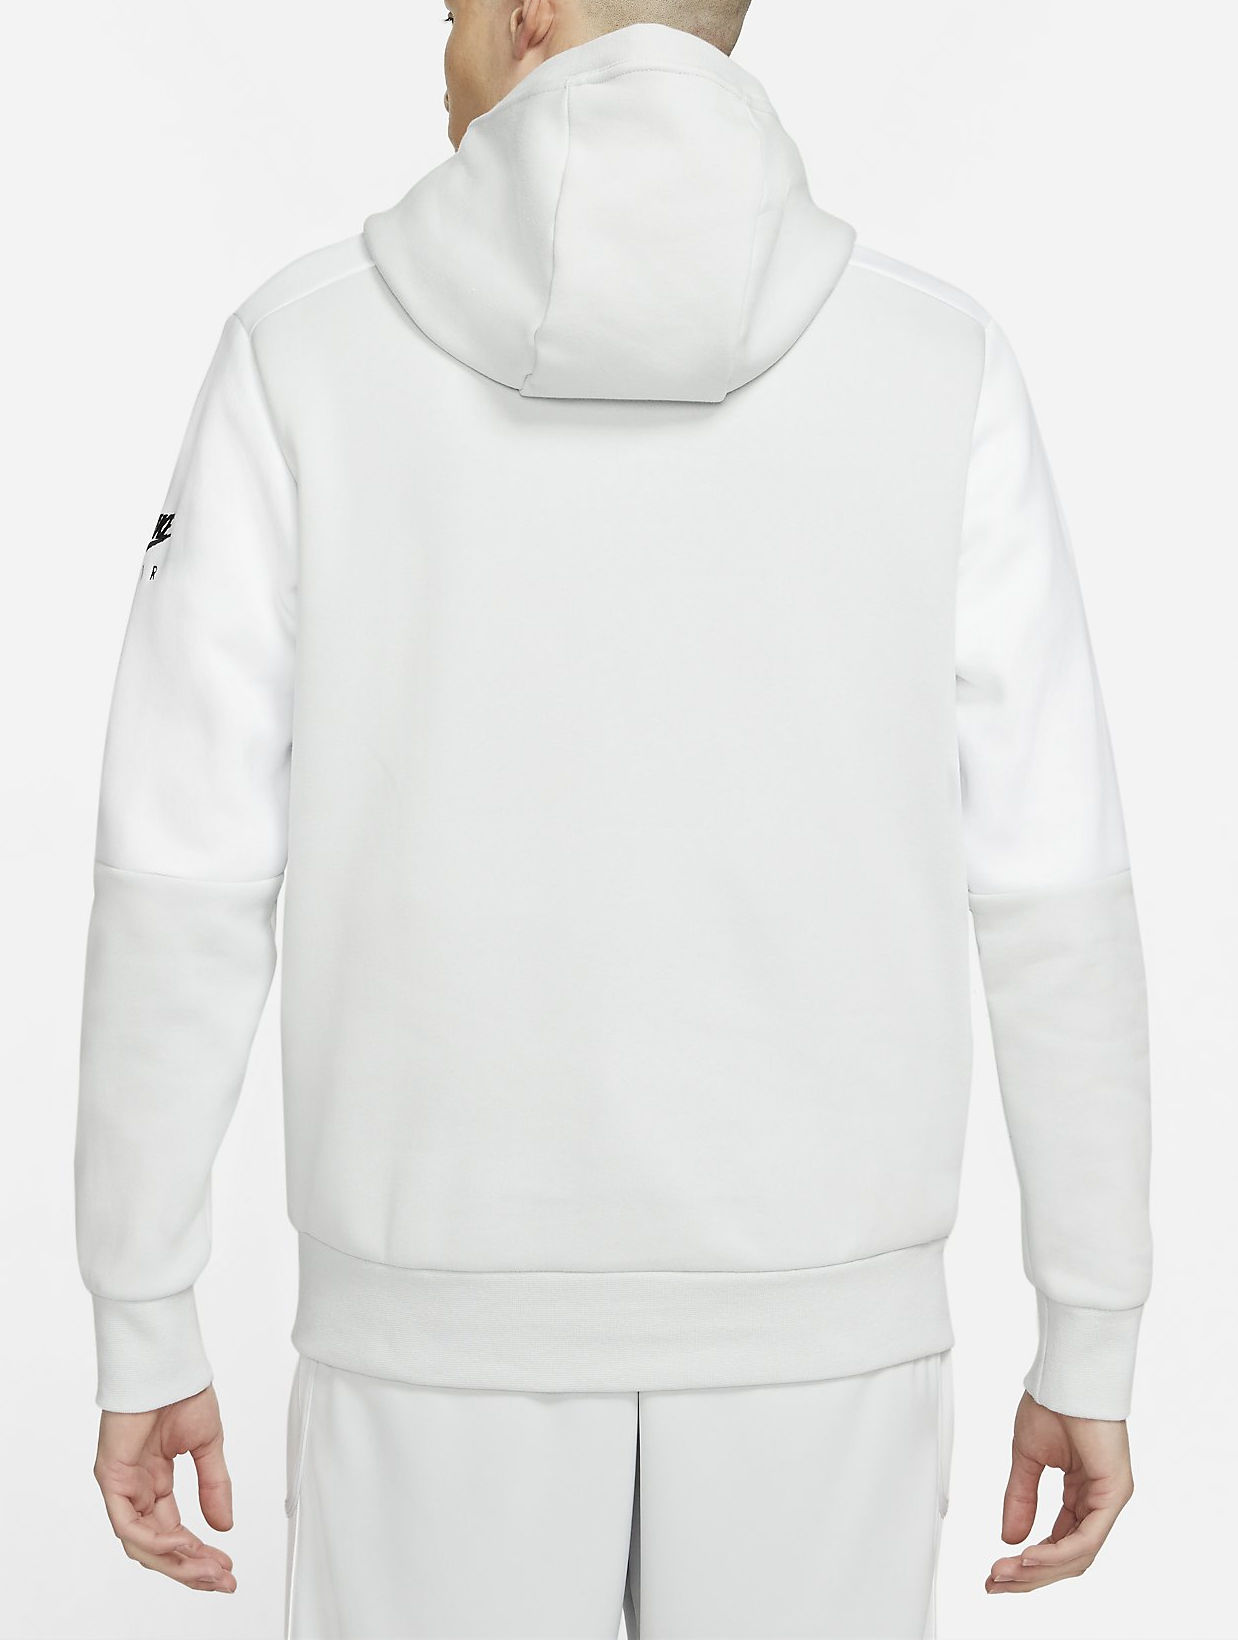 Hooded Sweatshirt Nike M Nsw Air Po Flc Hoodie Top4running Ie